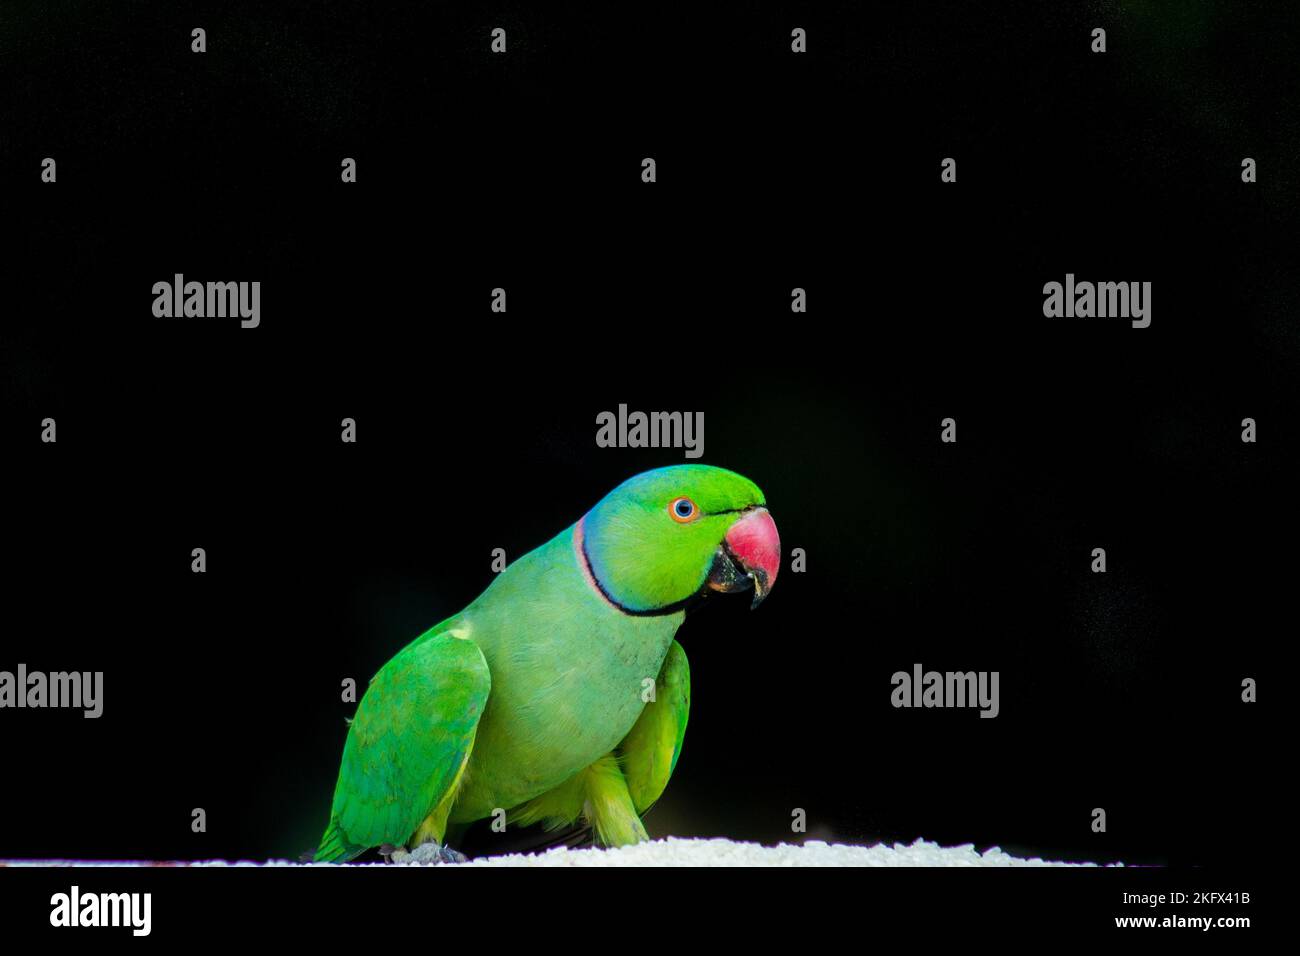 Porträt eines niedlichen Rosenberingsittichs oder auch bekannt als der Grüne Papagei vor dem dunklen Hintergrund Stockfoto